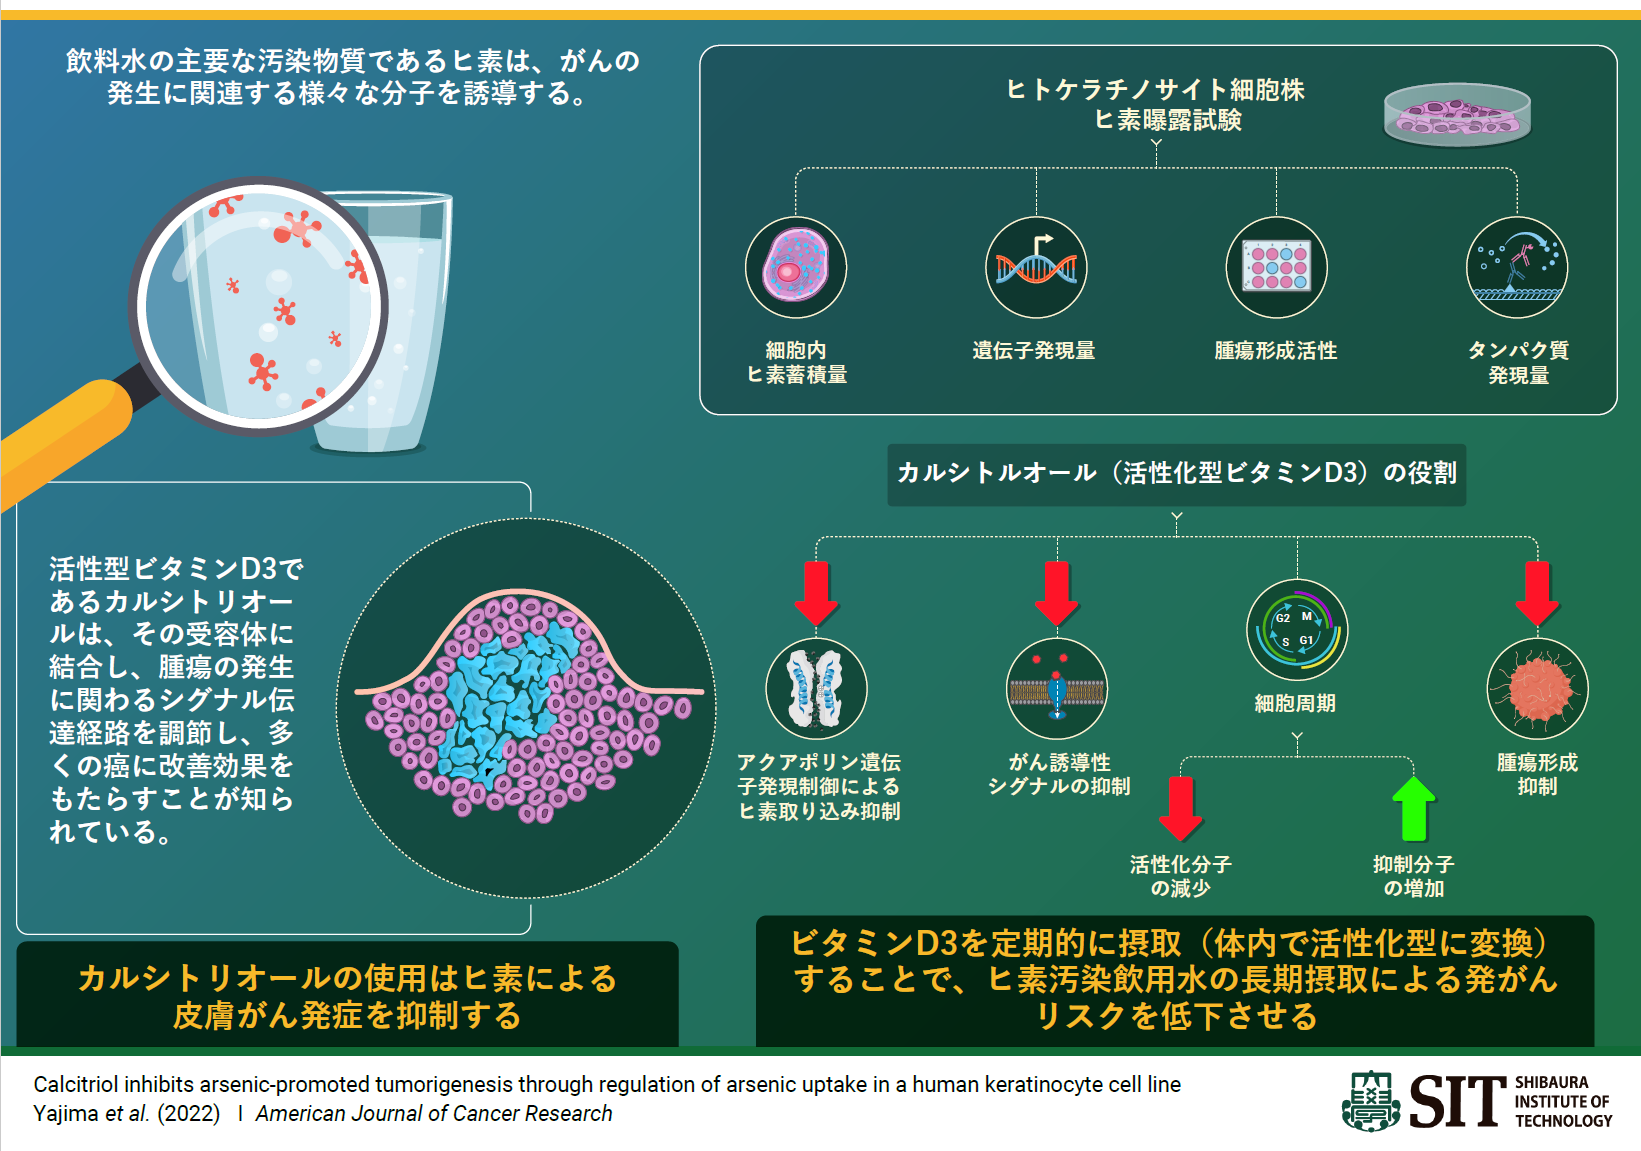 図. カルシトリオールによるヒ素誘導性発がんの抑制効果